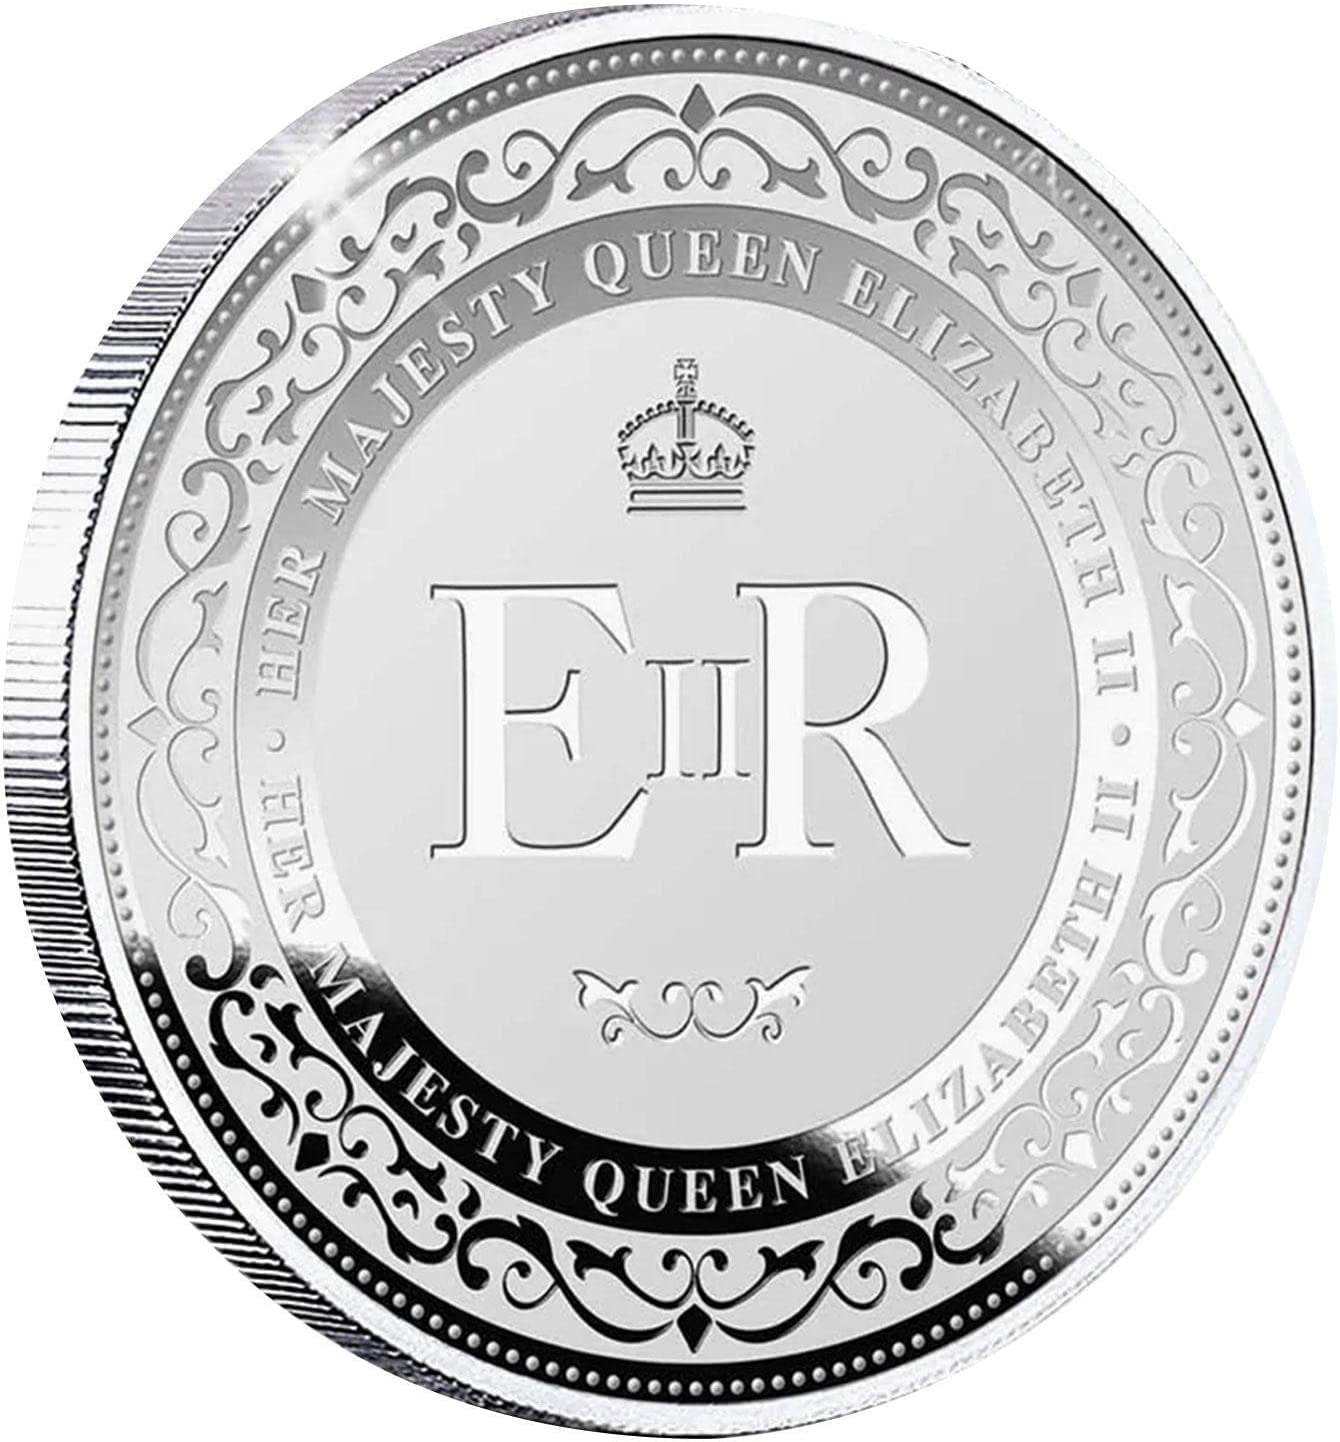 Queen Elizabeth II Commemorative Coins